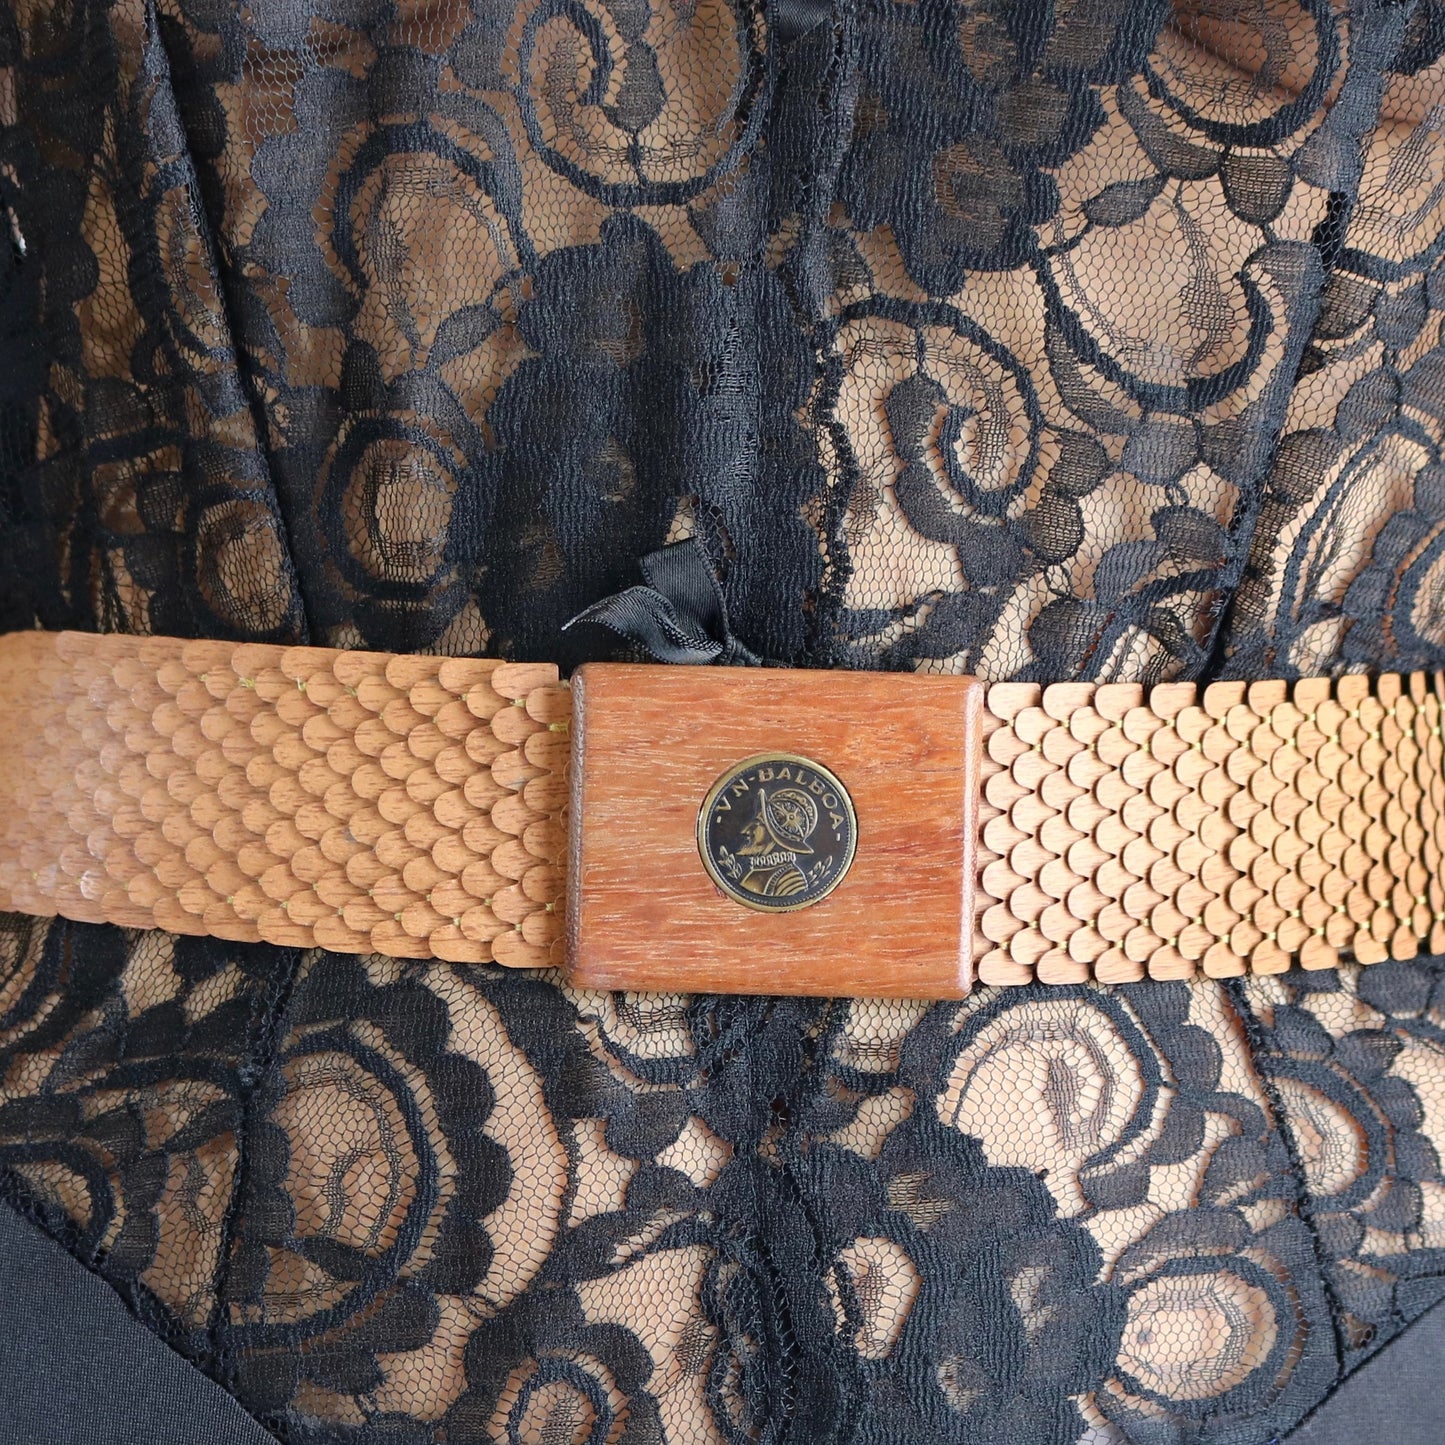 vintage belt, copper